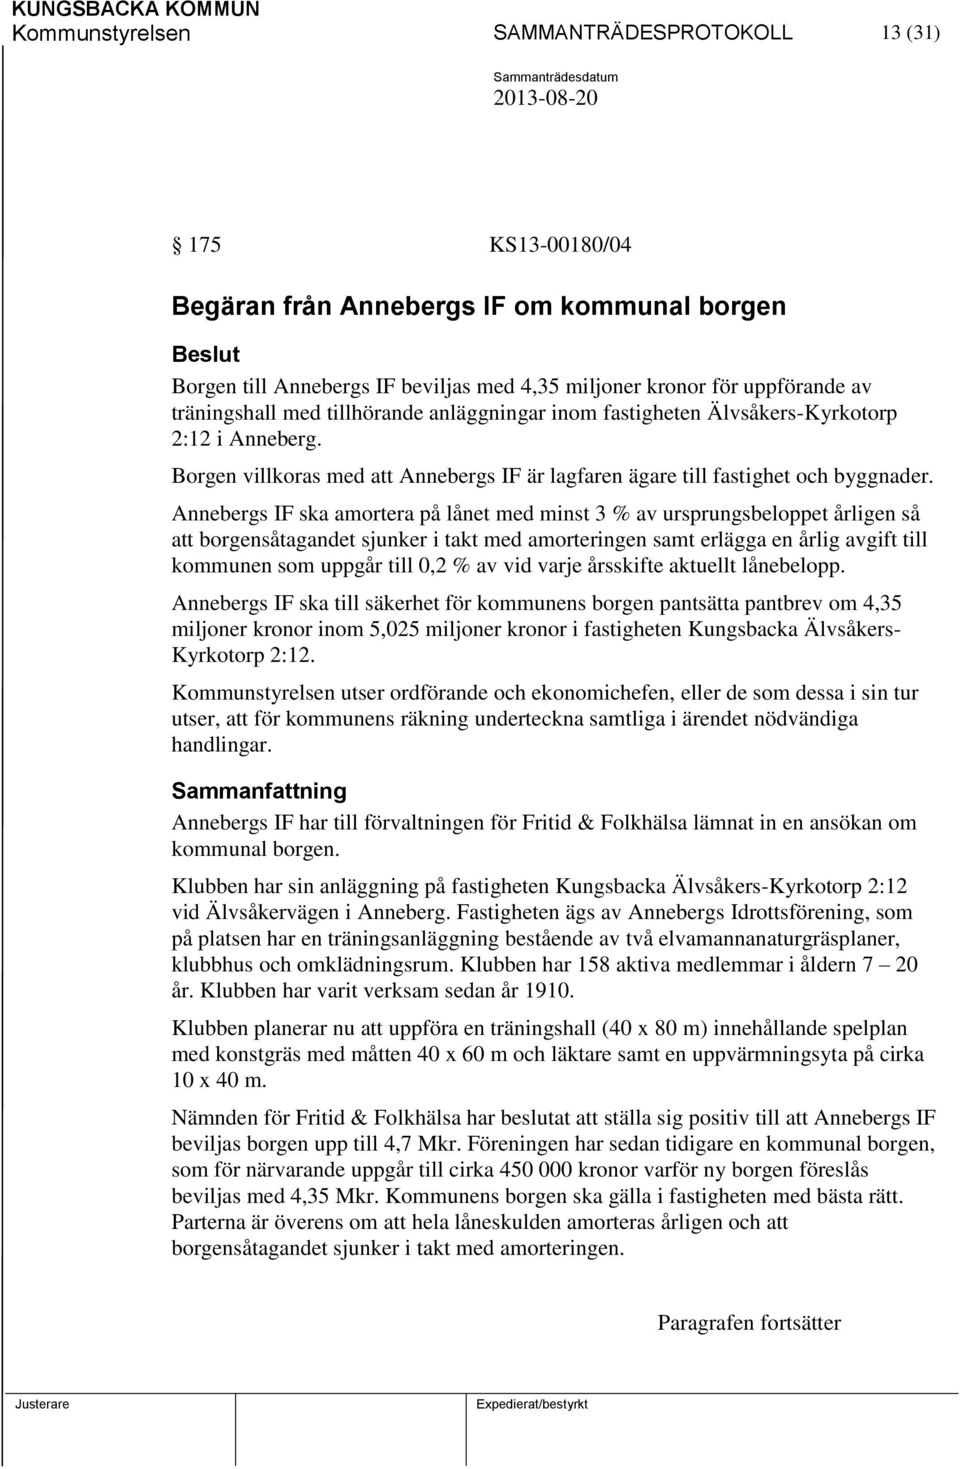 Annebergs IF ska amortera på lånet med minst 3 % av ursprungsbeloppet årligen så att borgensåtagandet sjunker i takt med amorteringen samt erlägga en årlig avgift till kommunen som uppgår till 0,2 %